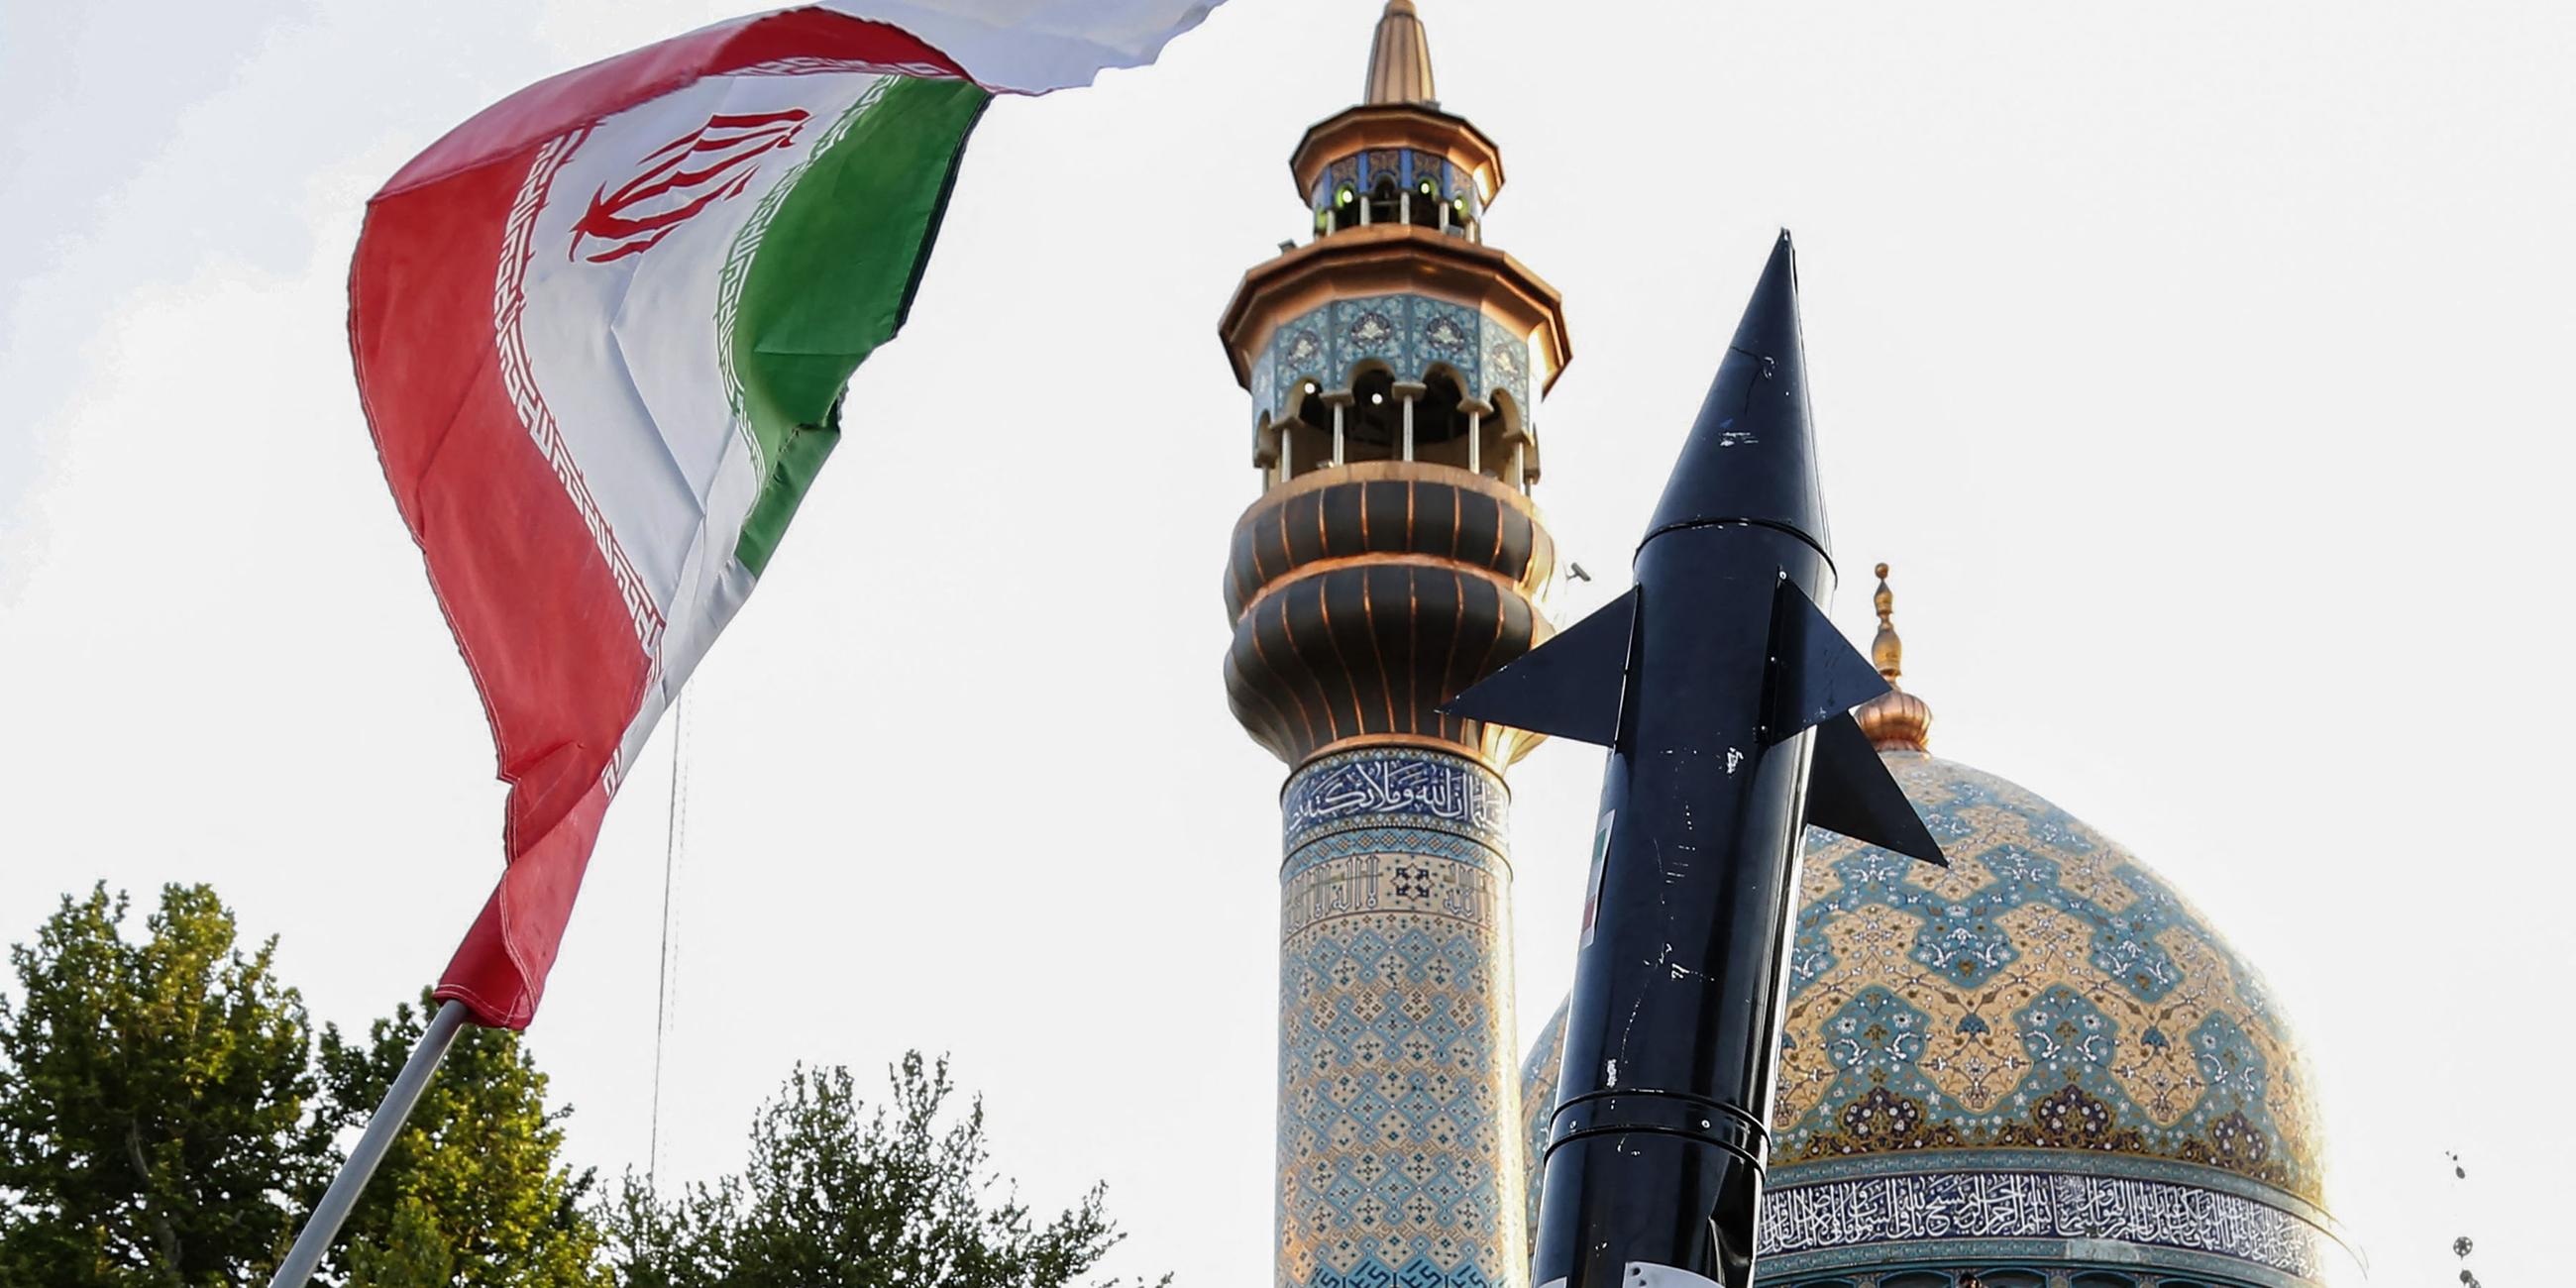 15.04.24, Teheran: Eine iranische Flagge und eine Nachbildung einer Rakete in Teheran.